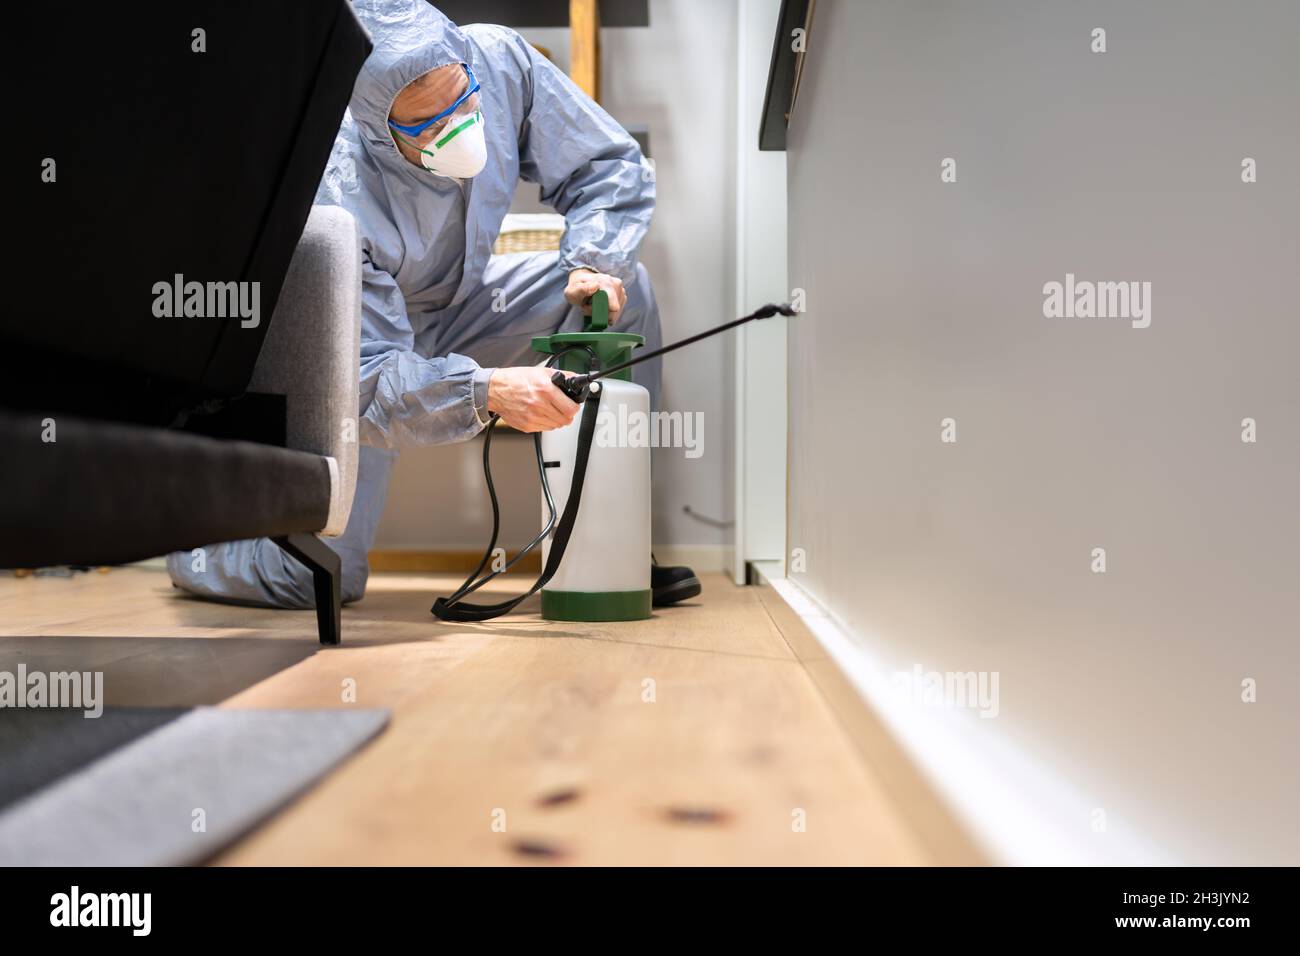 Pest Control Exterminator Man Spraying Termite Pesticide At Home Stock Photo